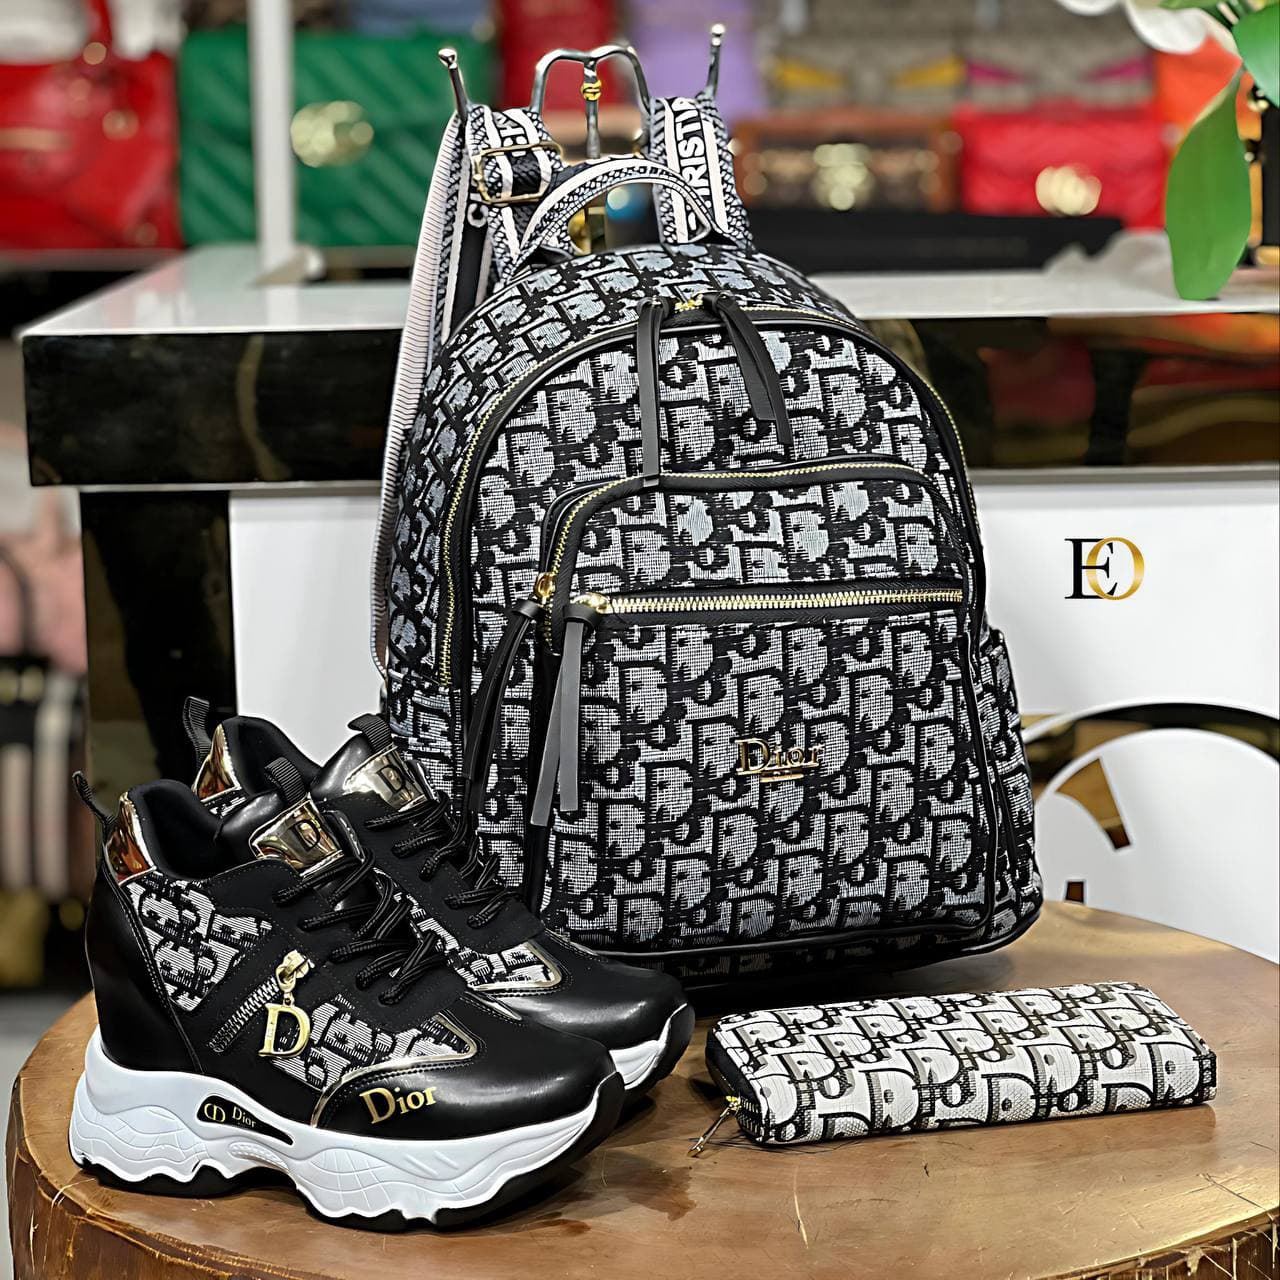 Conjunto zapatillas , mochila y cartera Dior - Imagen 4